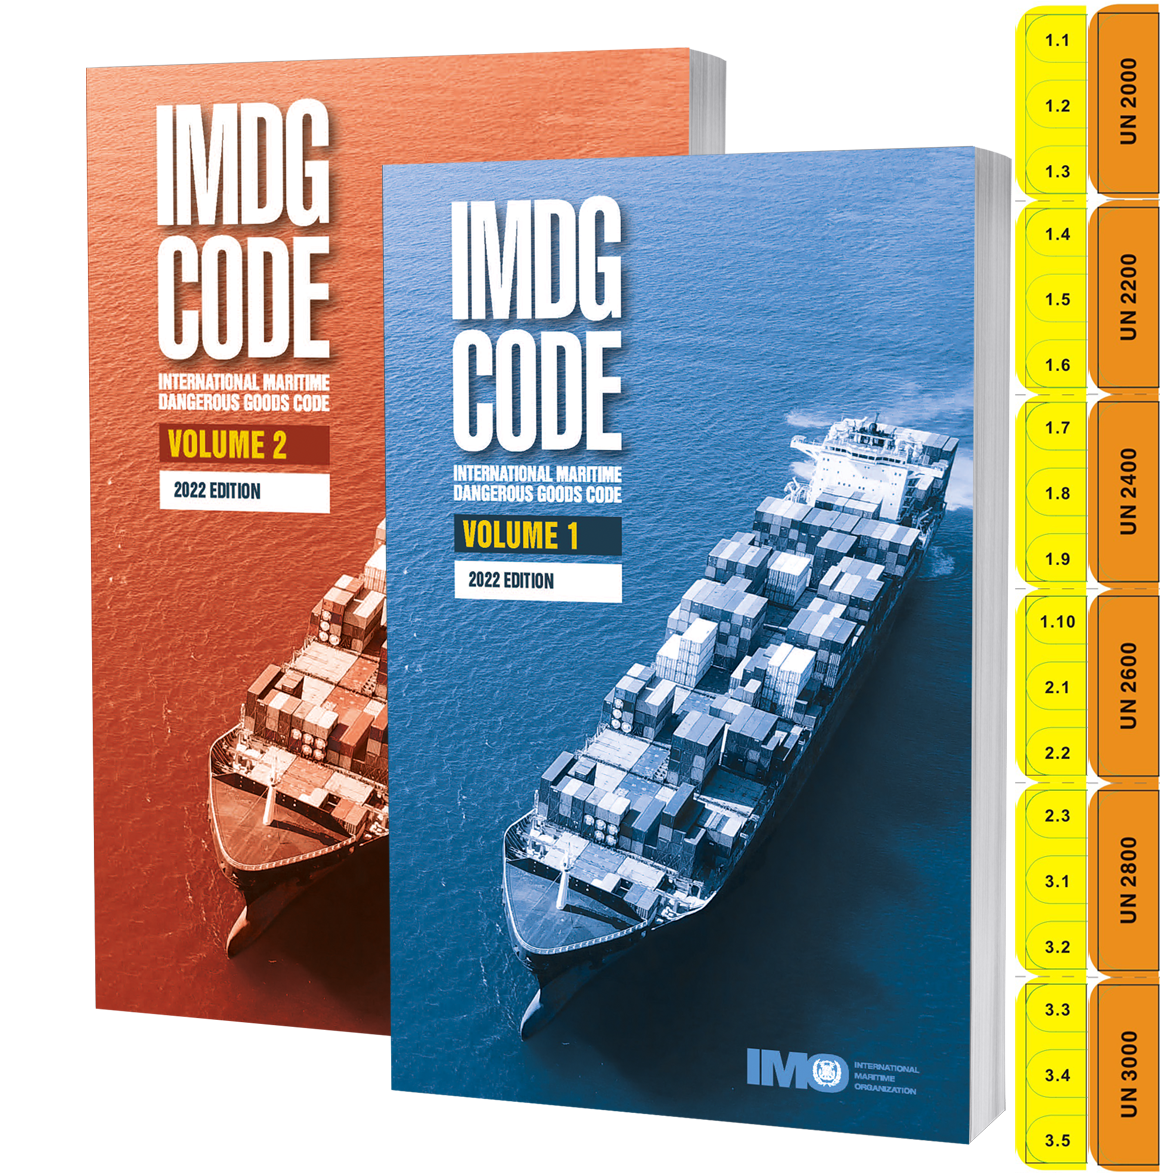 IMDG Code Marine regulations